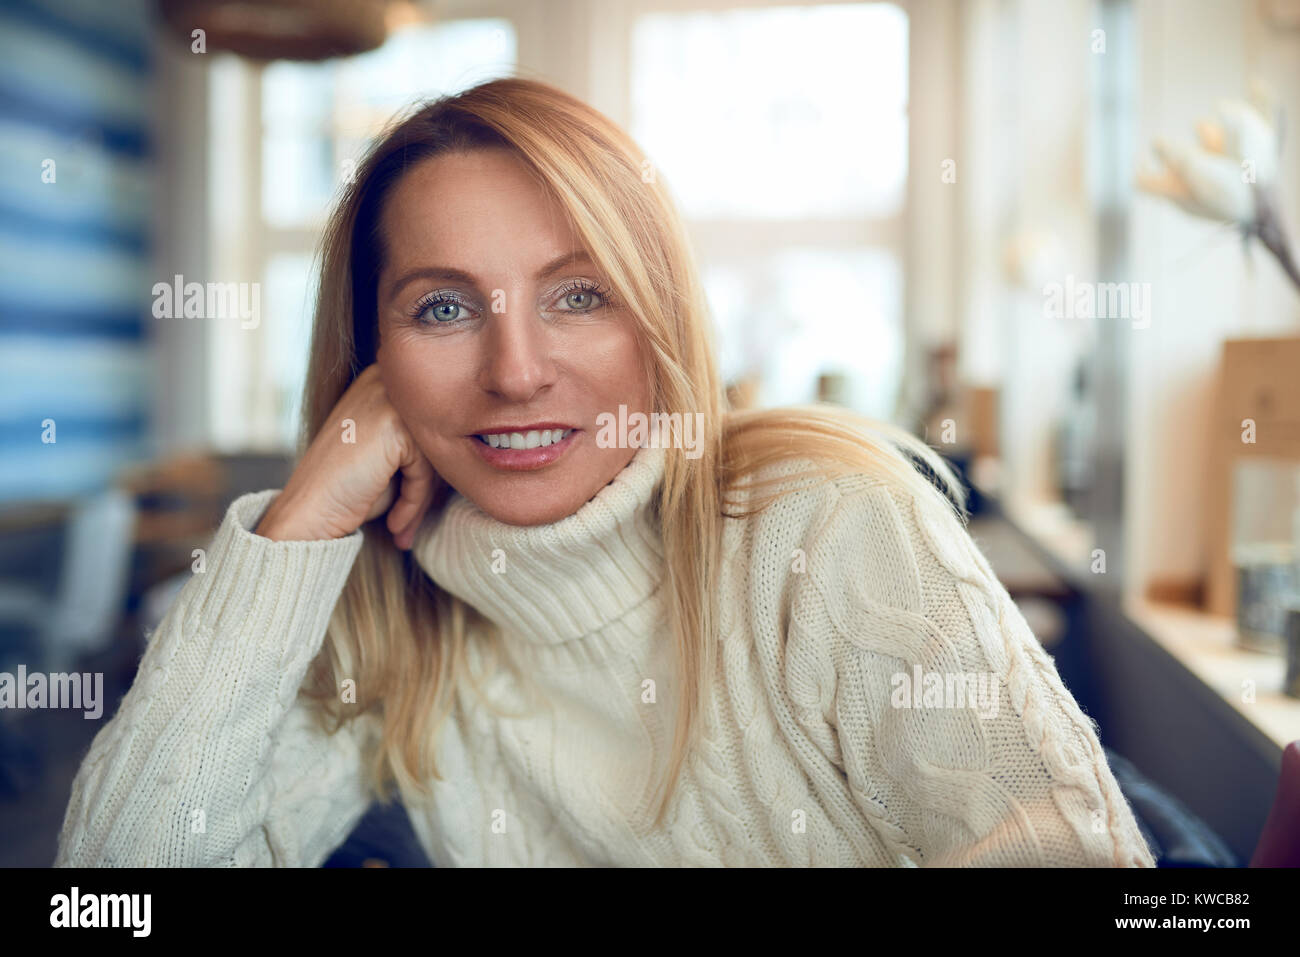 Ritratto di una bella donna bionda con i capelli lunghi e gli occhi blu guardando la fotocamera in luoghi chiusi rilassata Foto Stock